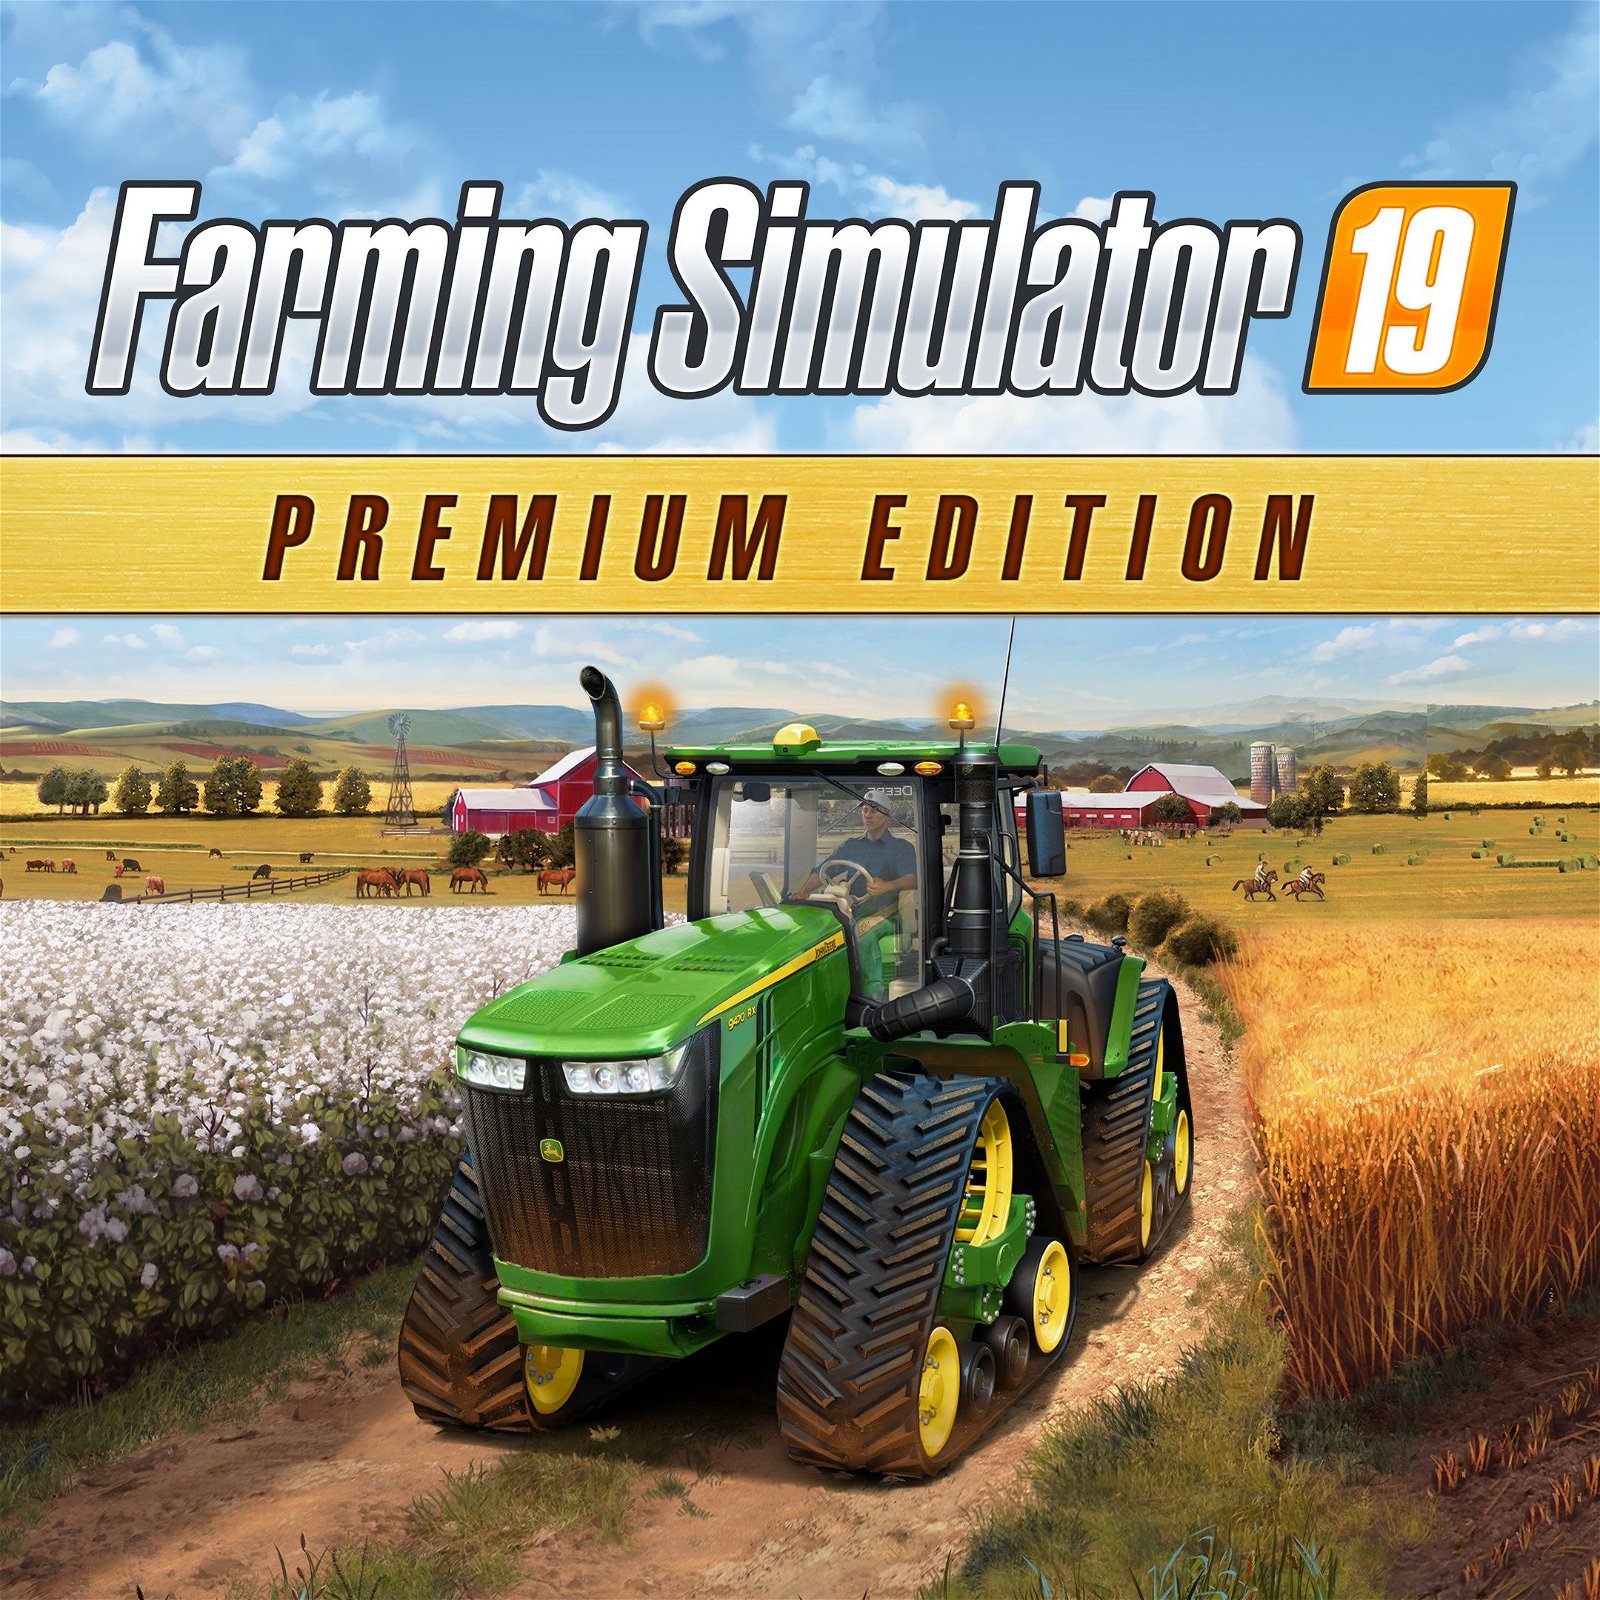 Image of Farming Simulator 19 - Premium Edition (Windows 10)